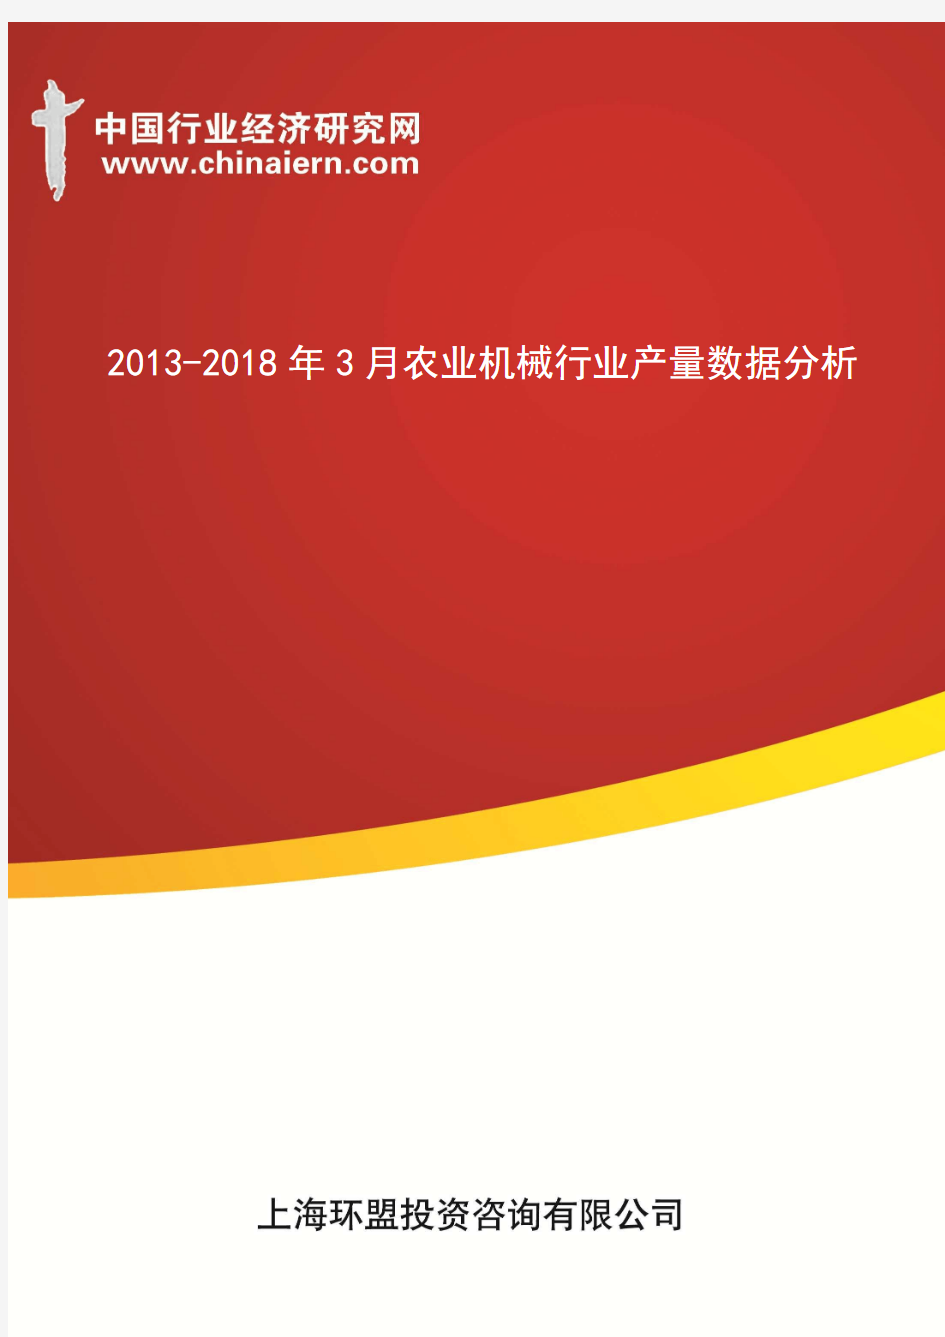 2013-2018年3月农业机械行业产量数据分析(上海环盟)